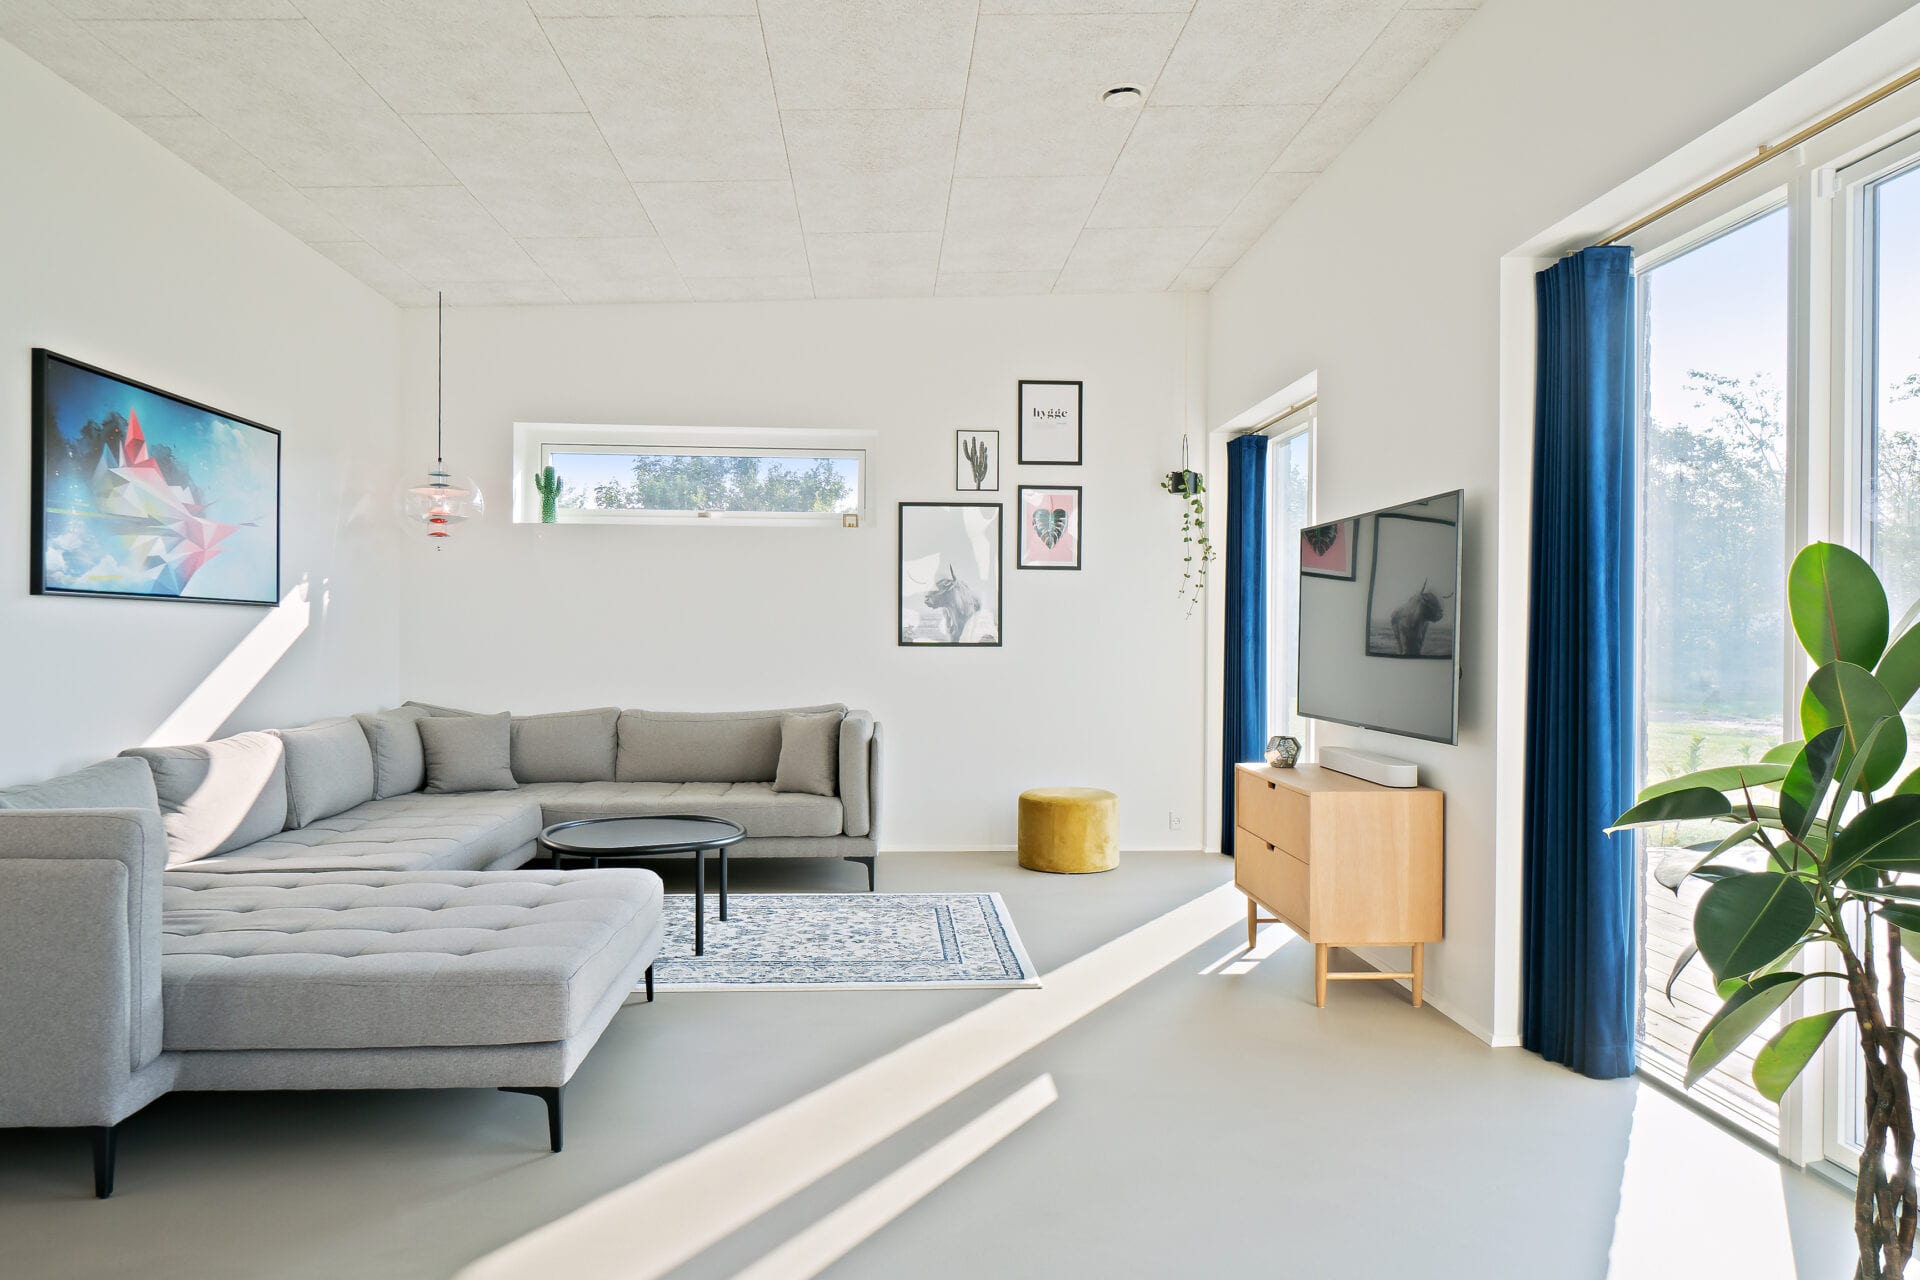 Mette og Mikkel bygger K2 Arkitec tv-stue